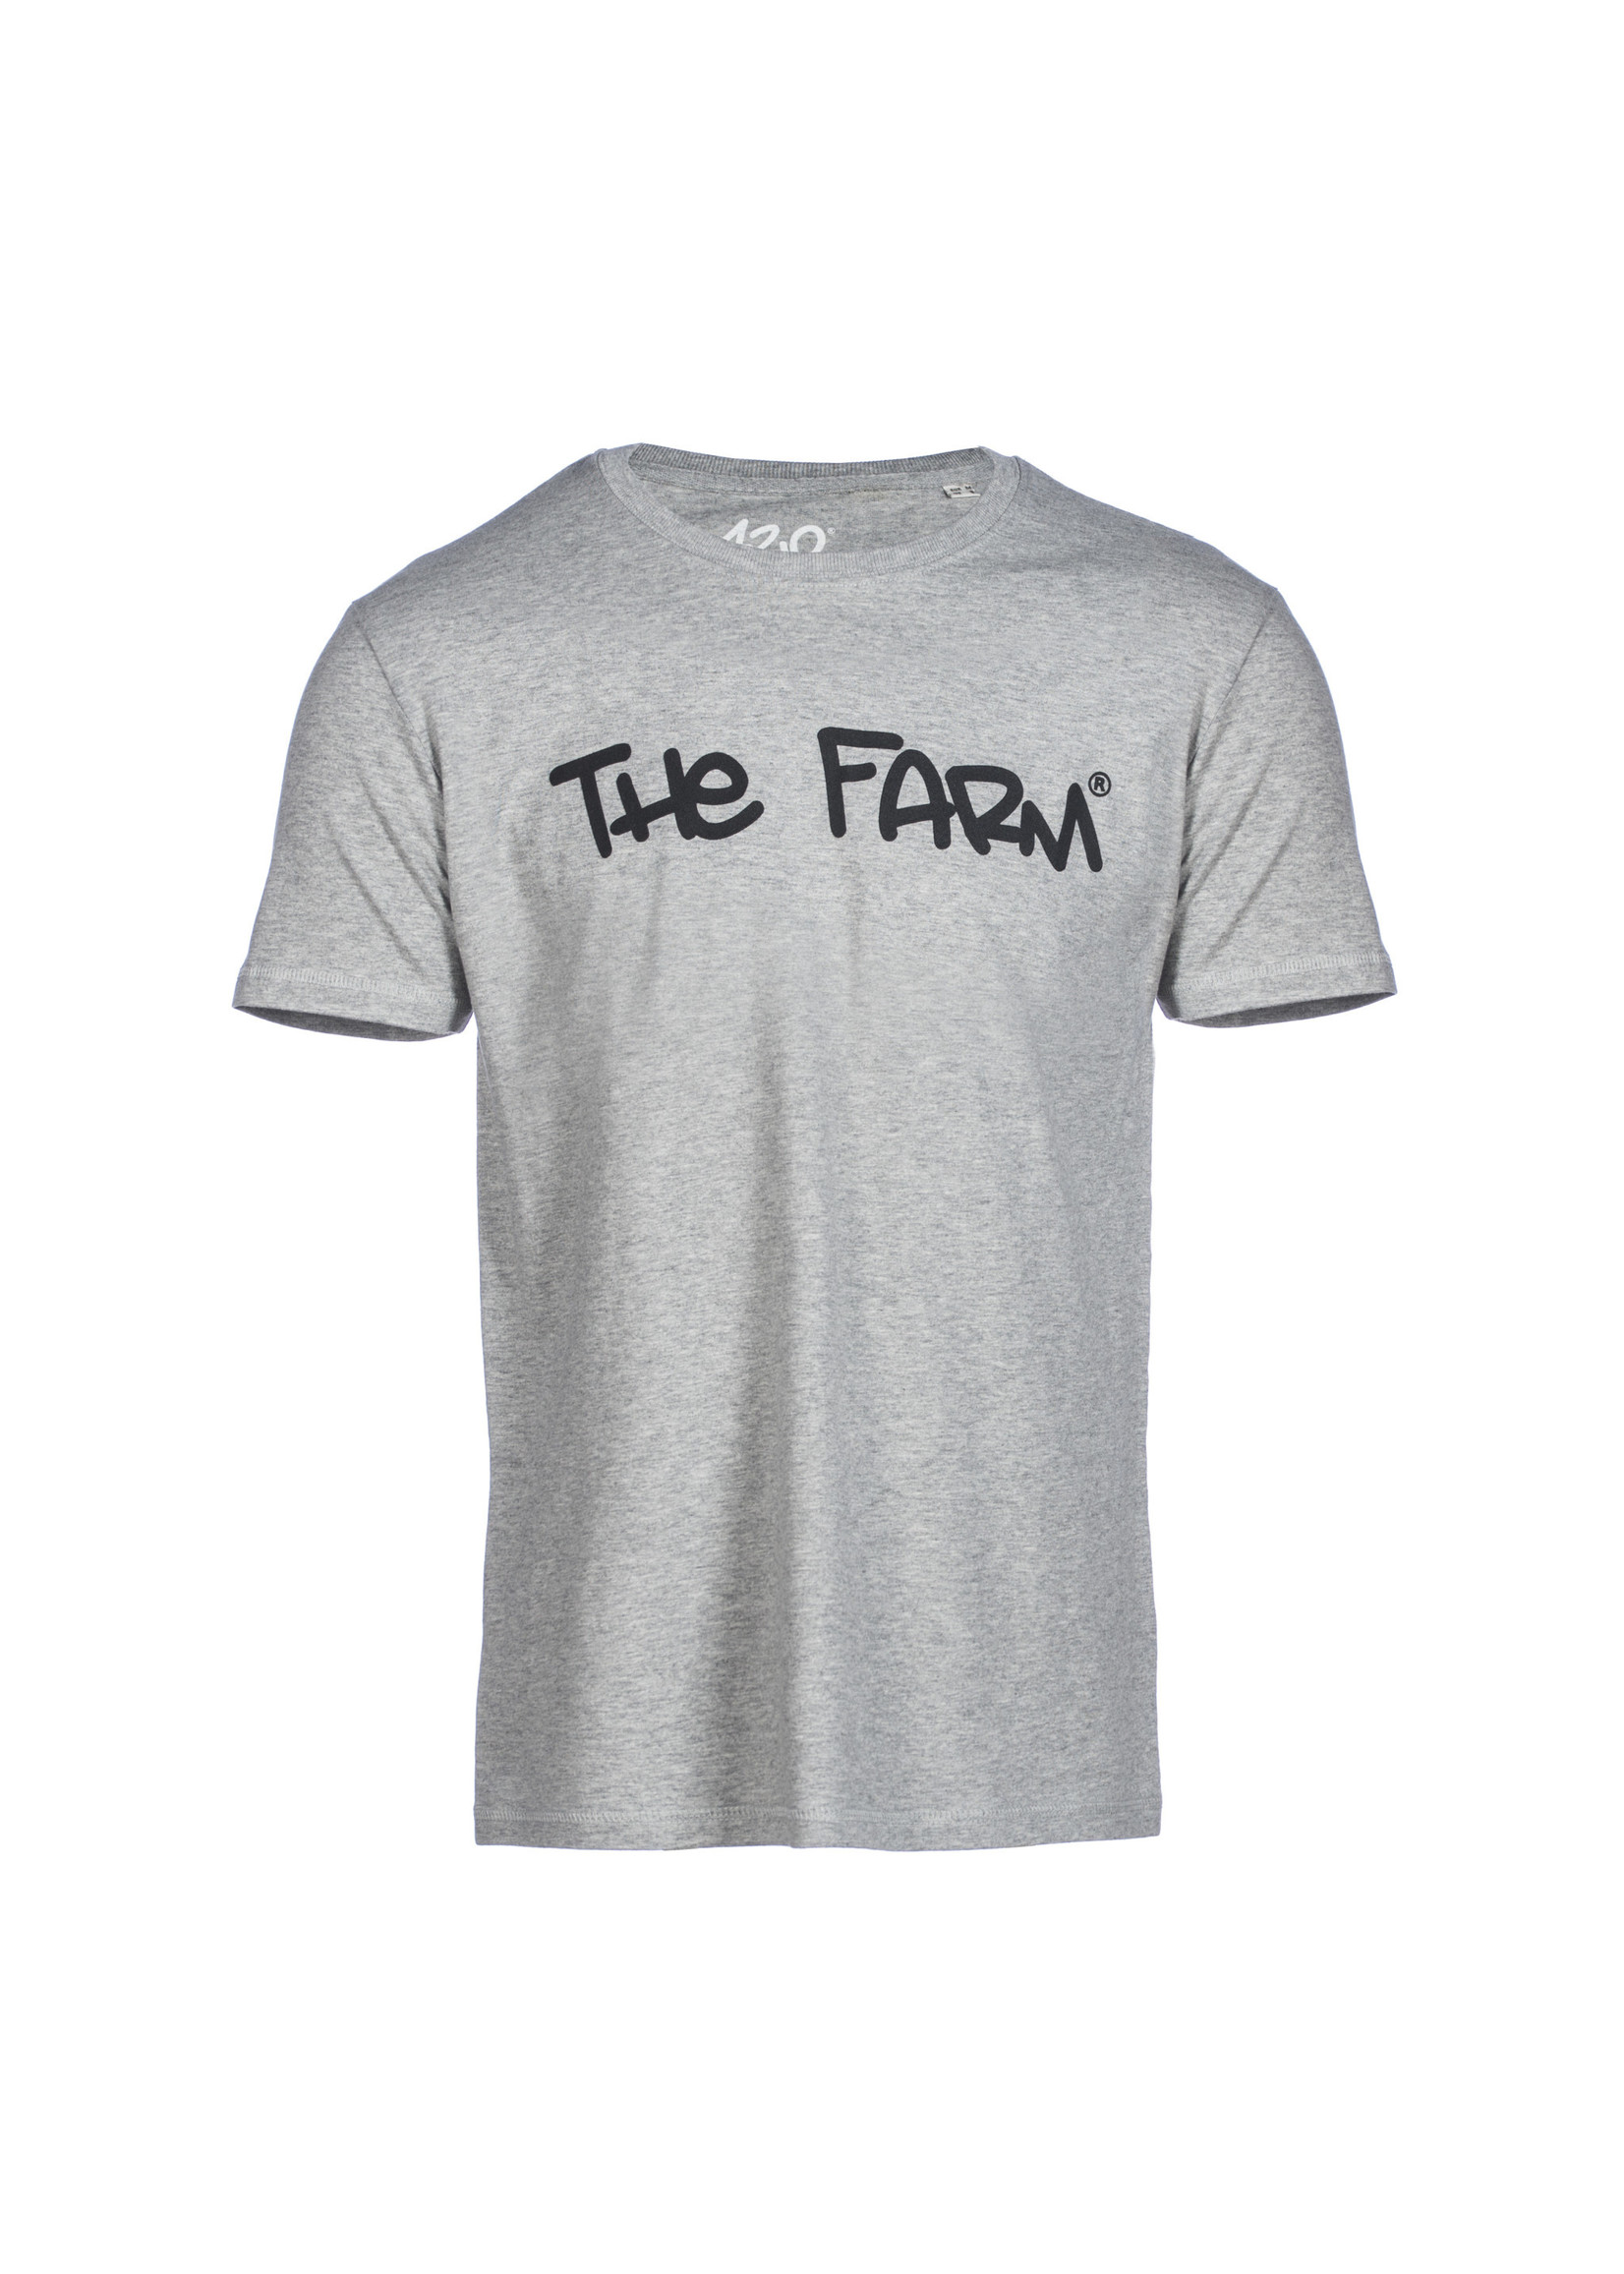 The Farm T-Shirt The Farm grey